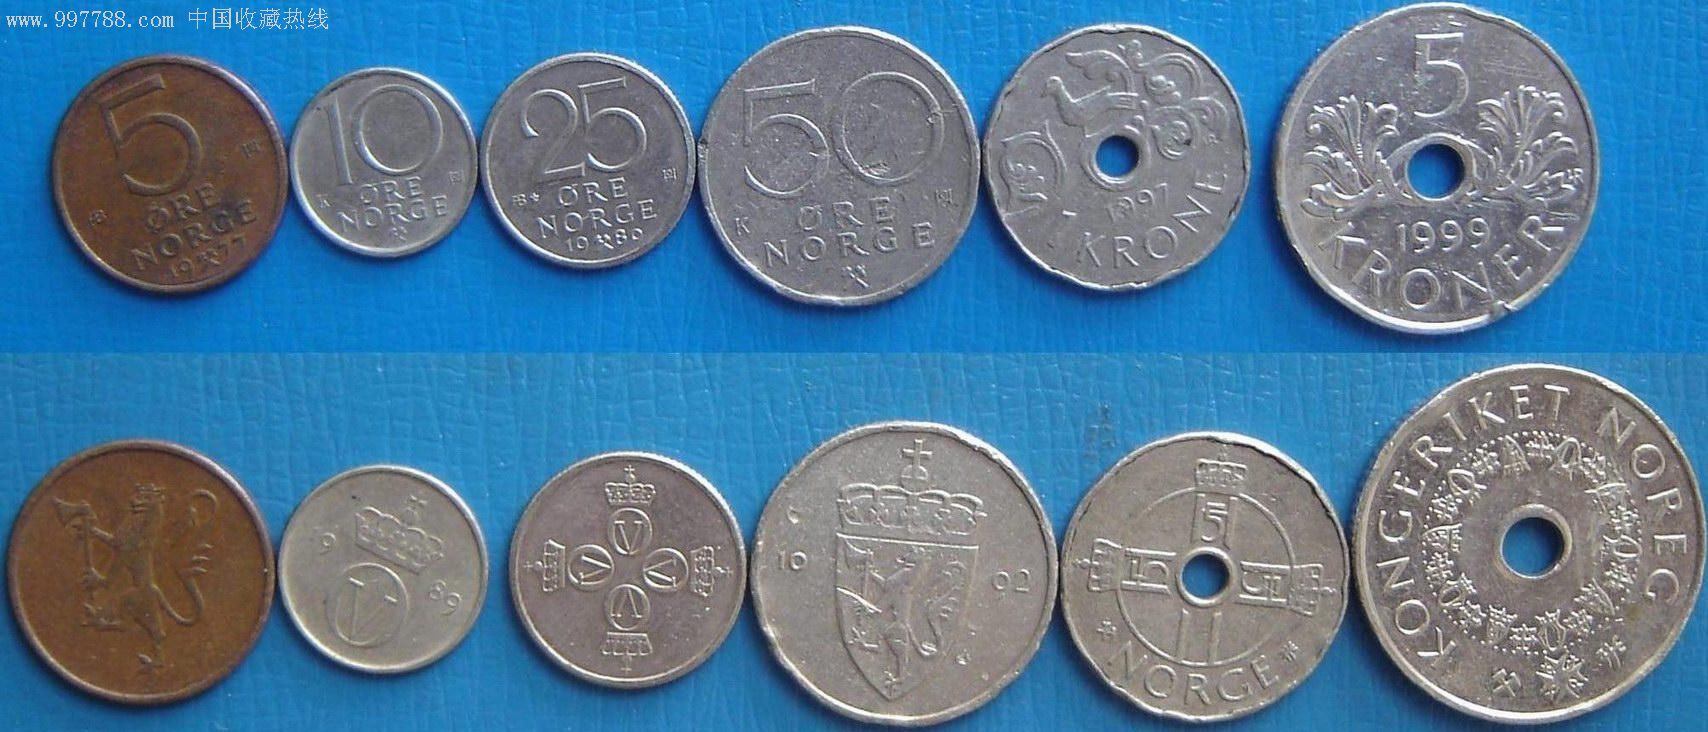 [乐藏阁]挪威硬币6枚套(品相如图),外国钱币,欧洲钱币,普通币/钞,普通